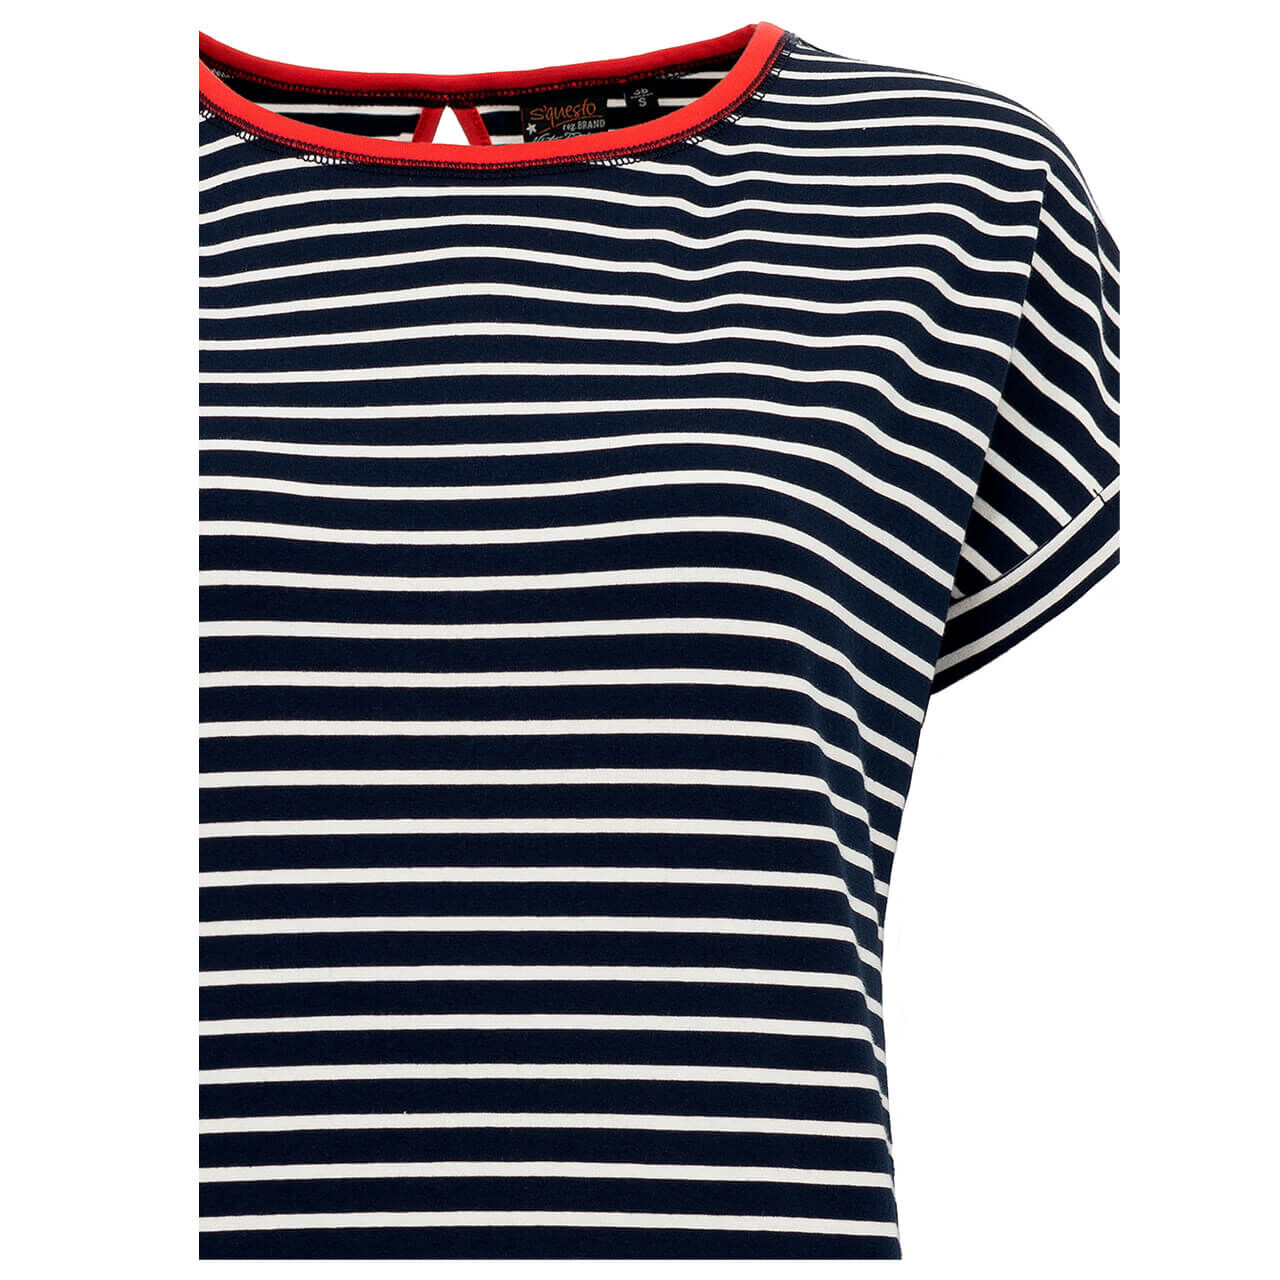 Soquesto T-Shirt für Damen in Dunkelblau gestreift, FarbNr.: 2800